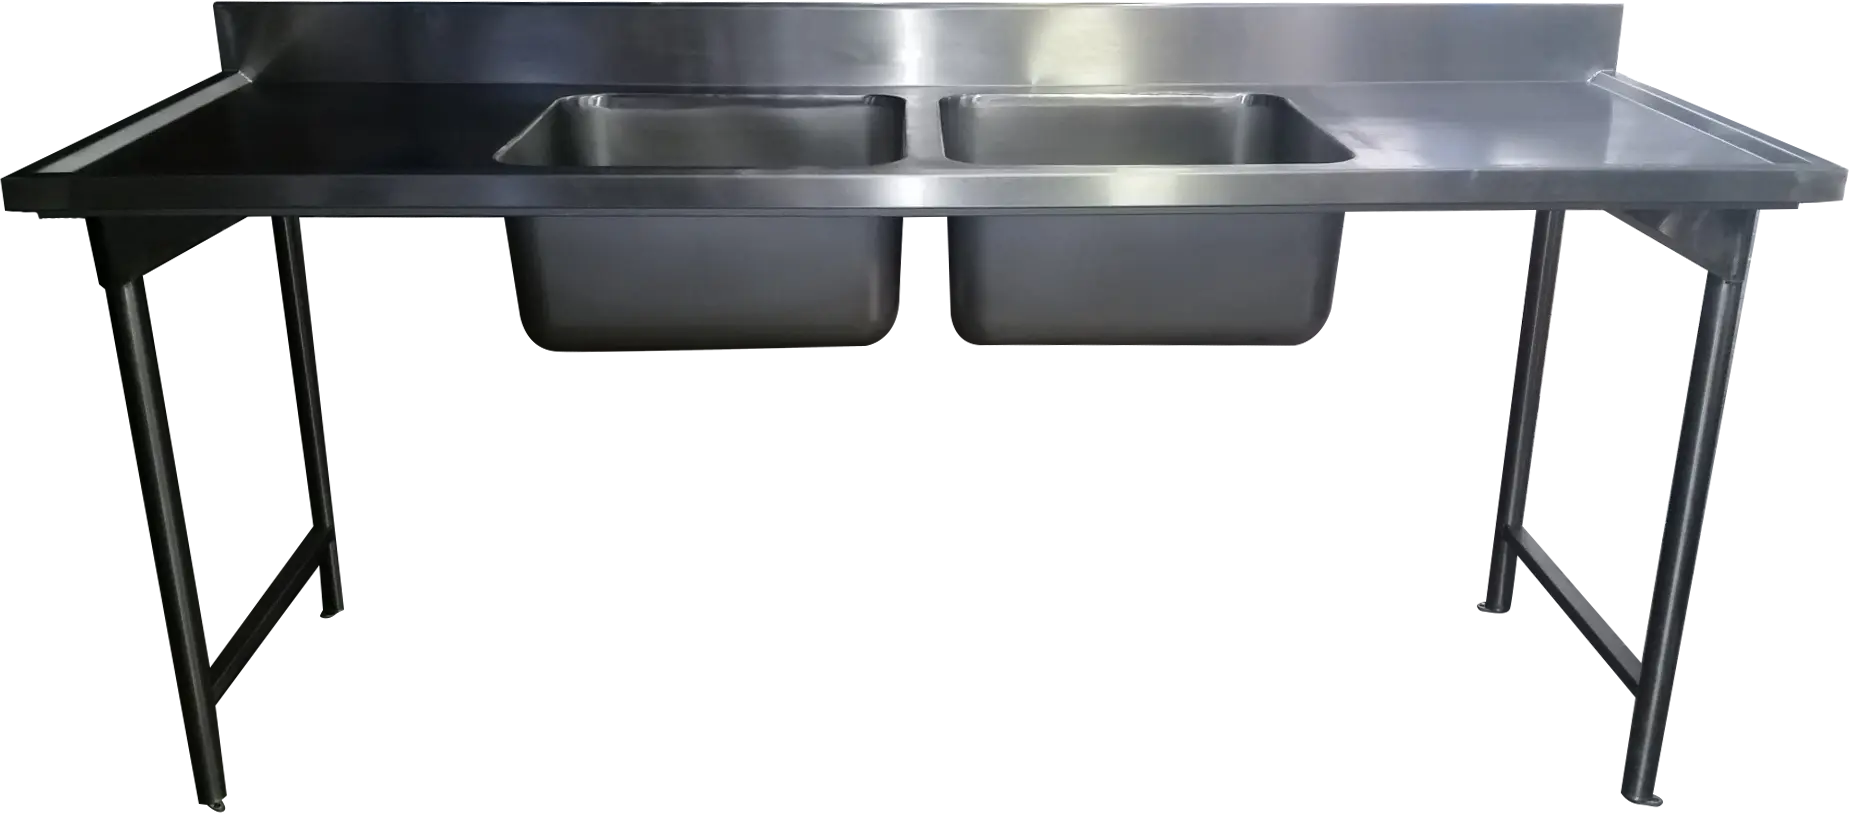 Douple drop in bowl sink